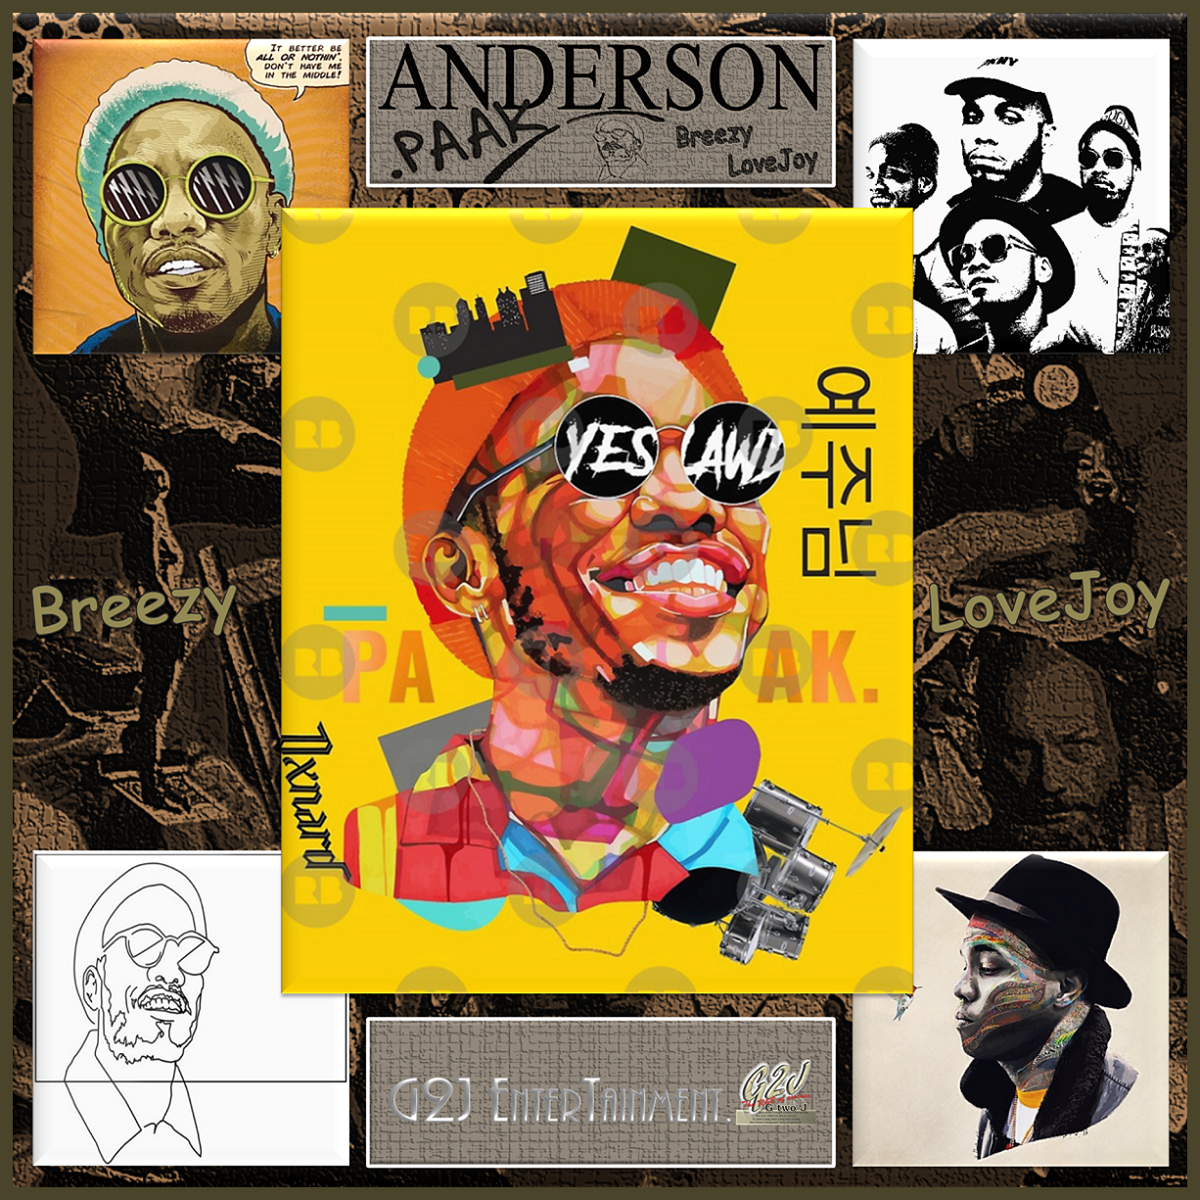 南カリフォルニア La が生んだ気鋭のラッパー Anderson Paak アンダーソン パーク が目指す ネクストレベルの未来派ソウル Hip Hop G2j Entertainment